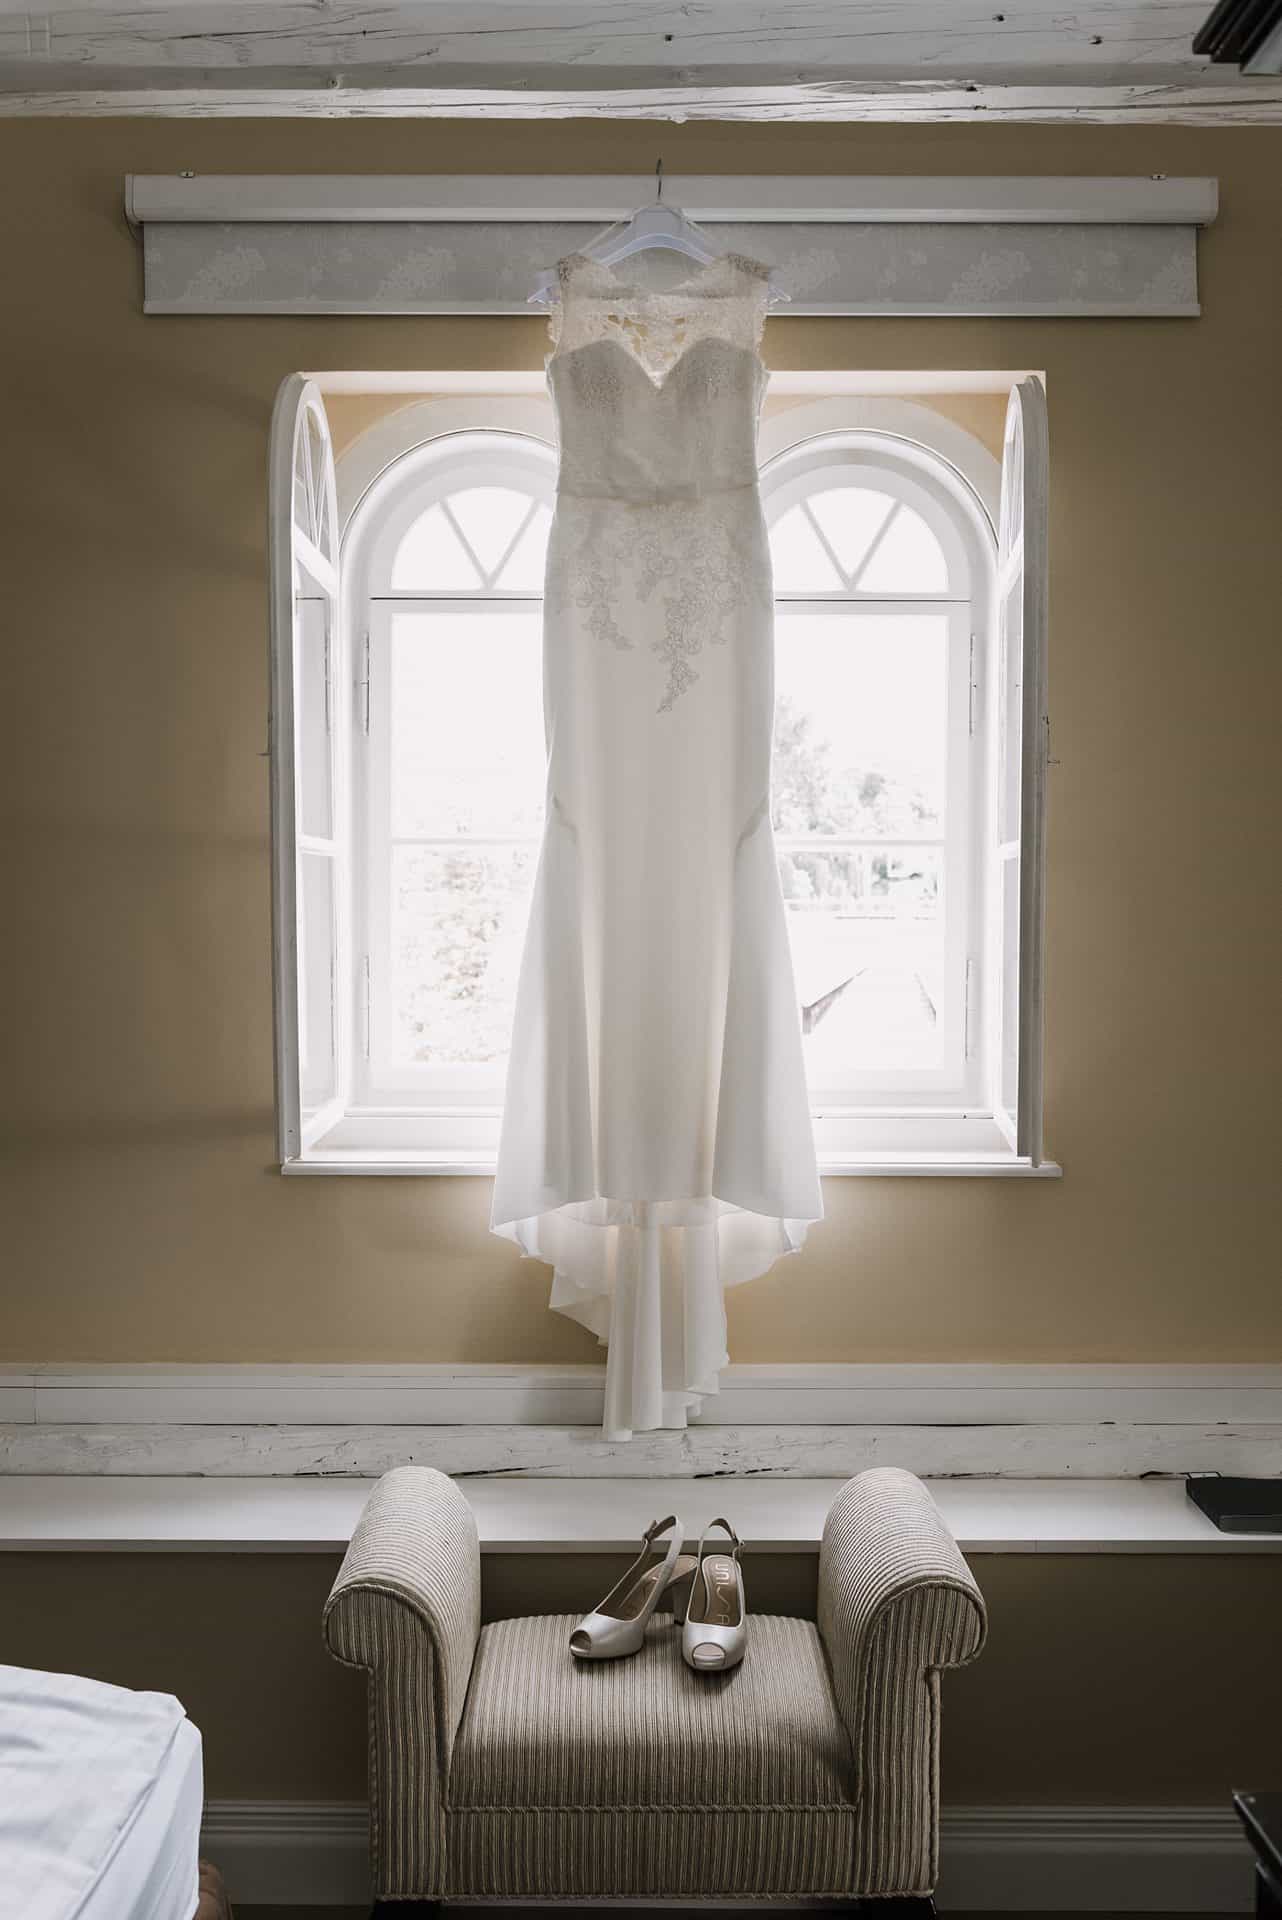 Ein Hochzeitskleid hängt vor einem Fenster in einem Zimmer.